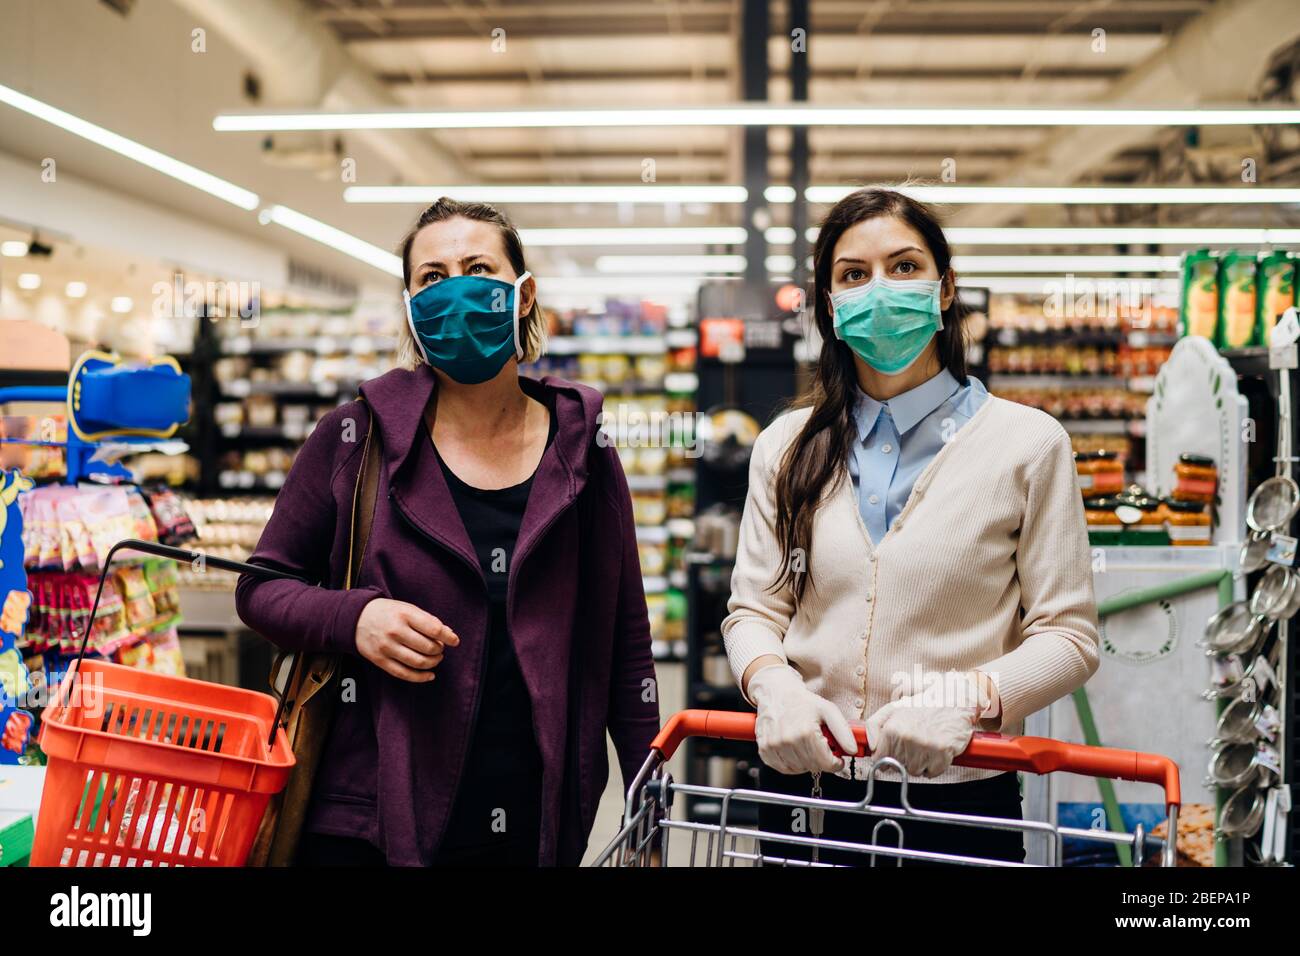 Acquirenti con maschere di acquisto per alimentari a causa di coronavirus pandemic in negozio di alimentari.COVID-19 cibo shopping.Quarantine Preparation.Panic acquisto e s Foto Stock